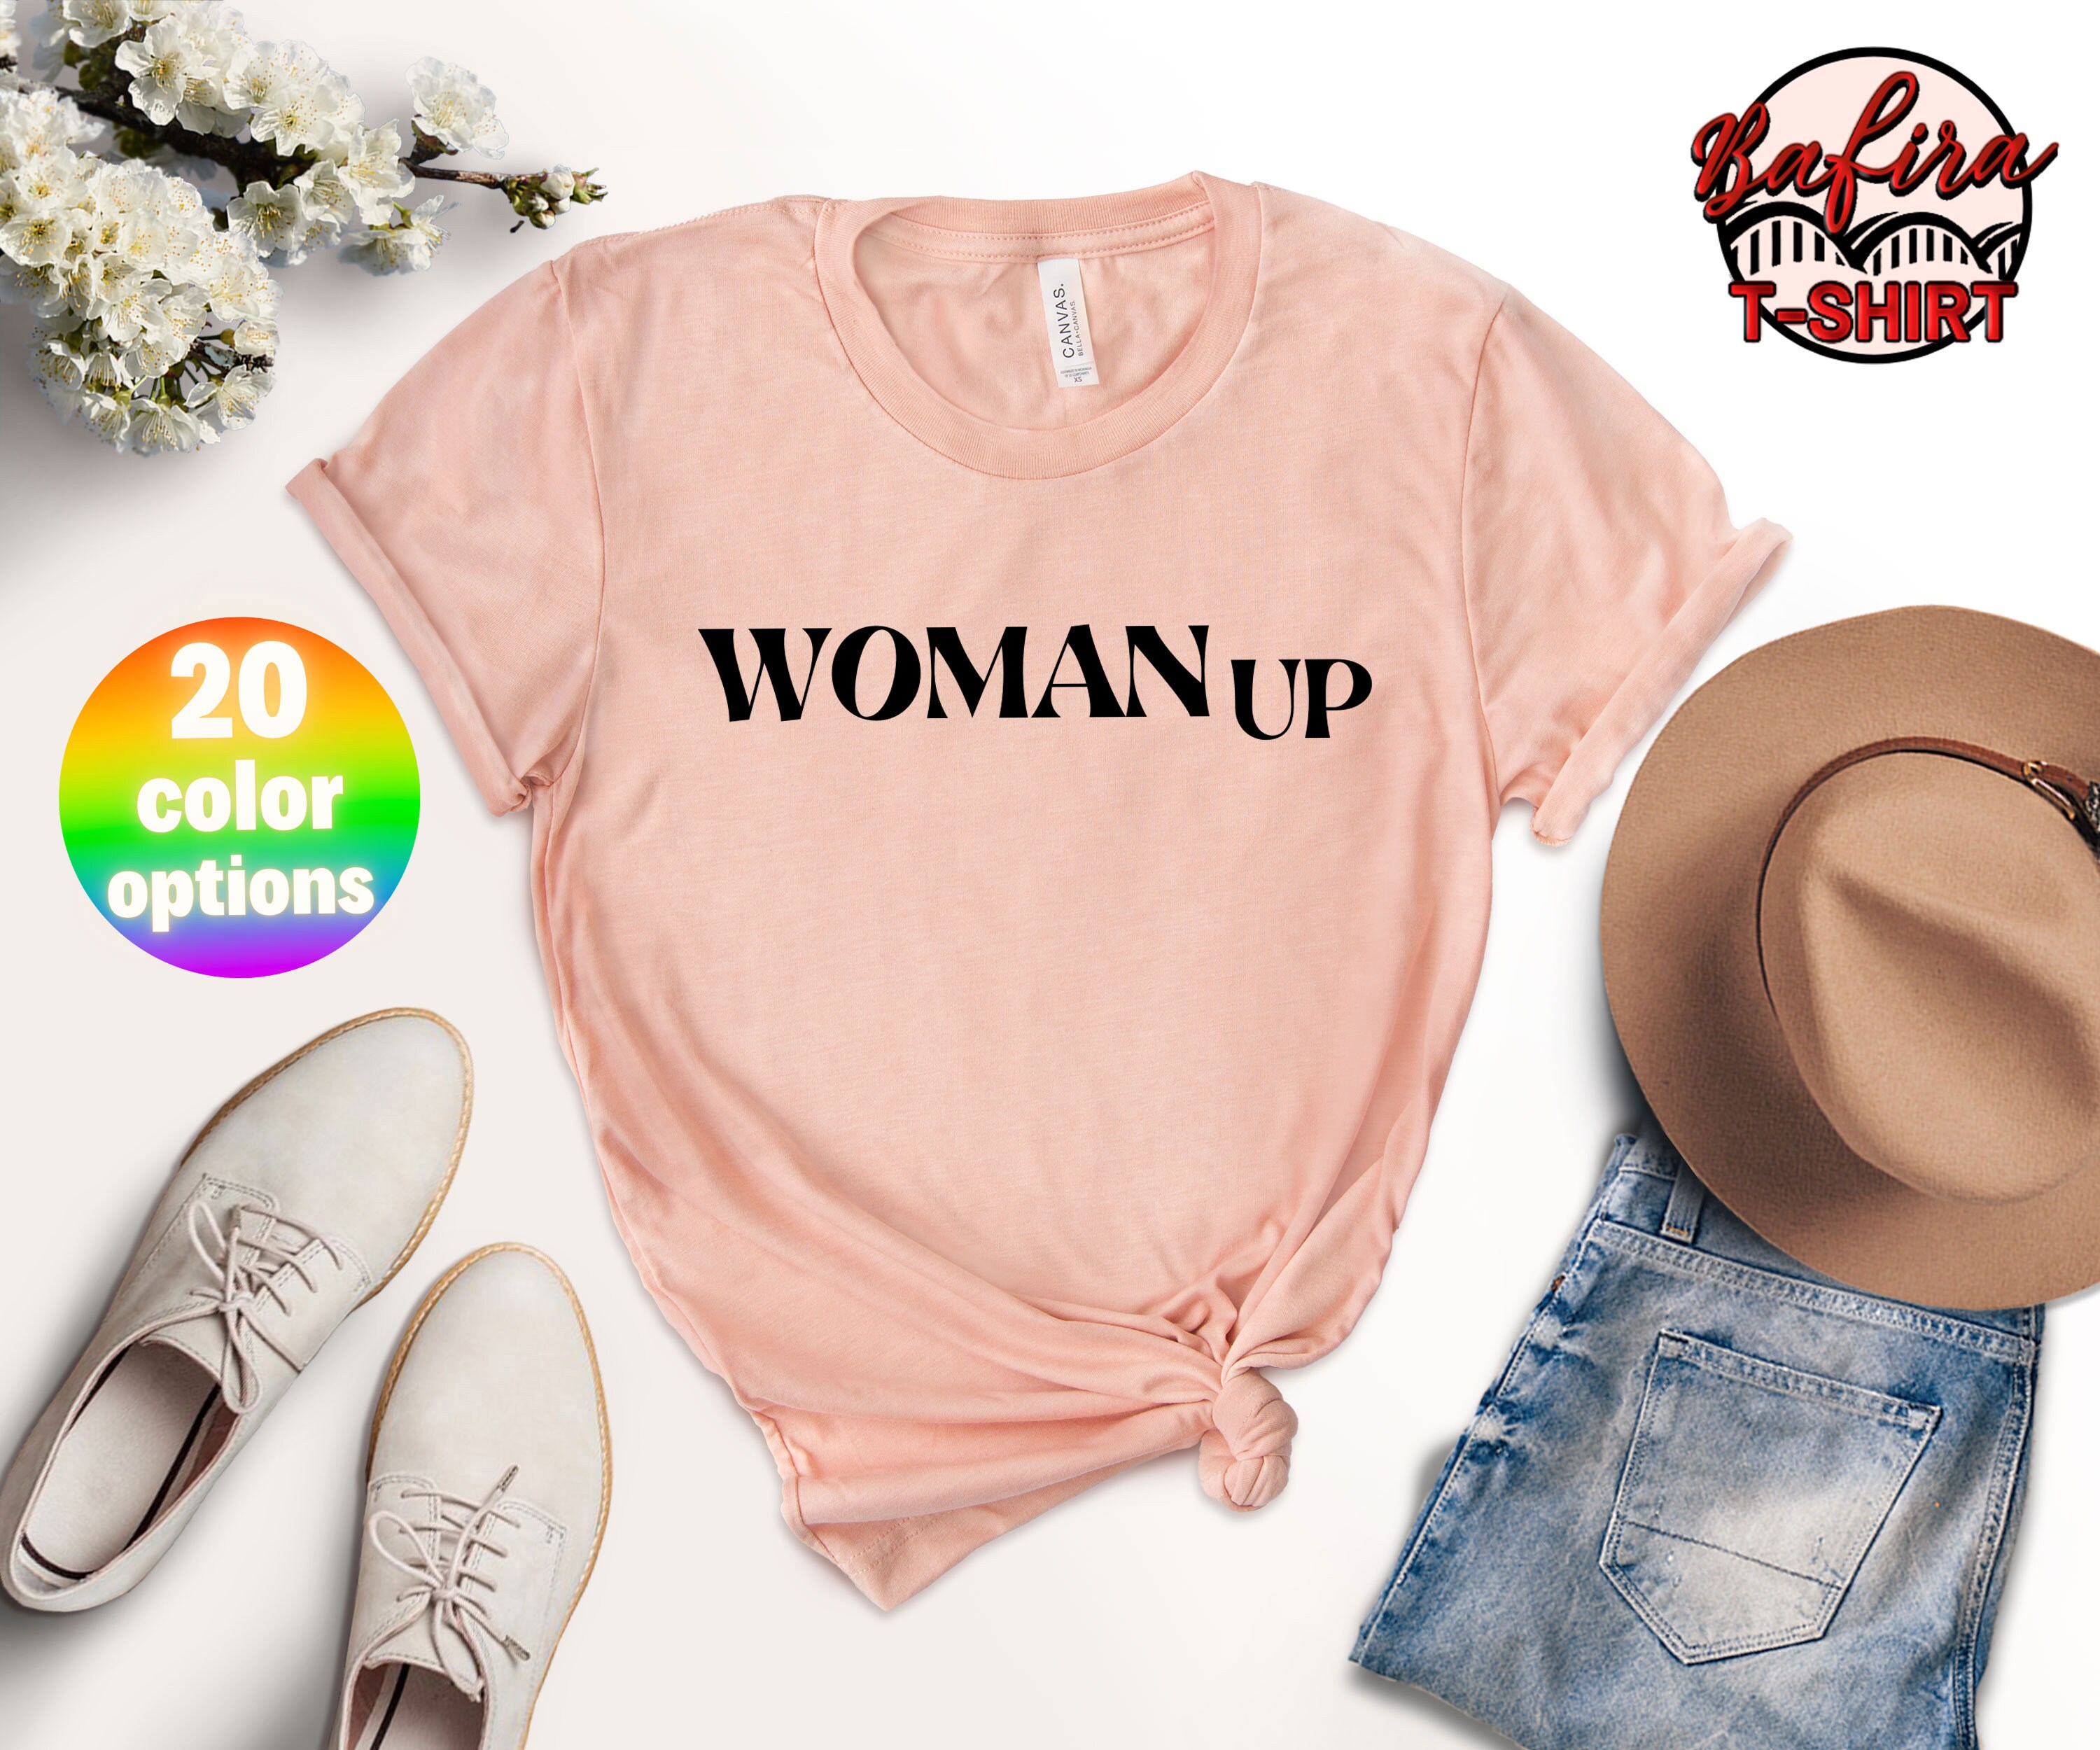 Discover Woman Up T-Shirt, Women Empowerment Shirt, Motivational Feminist Tee, Girls Power T-Shirt, Inspirational Equality Shirt, Gift For Feminist